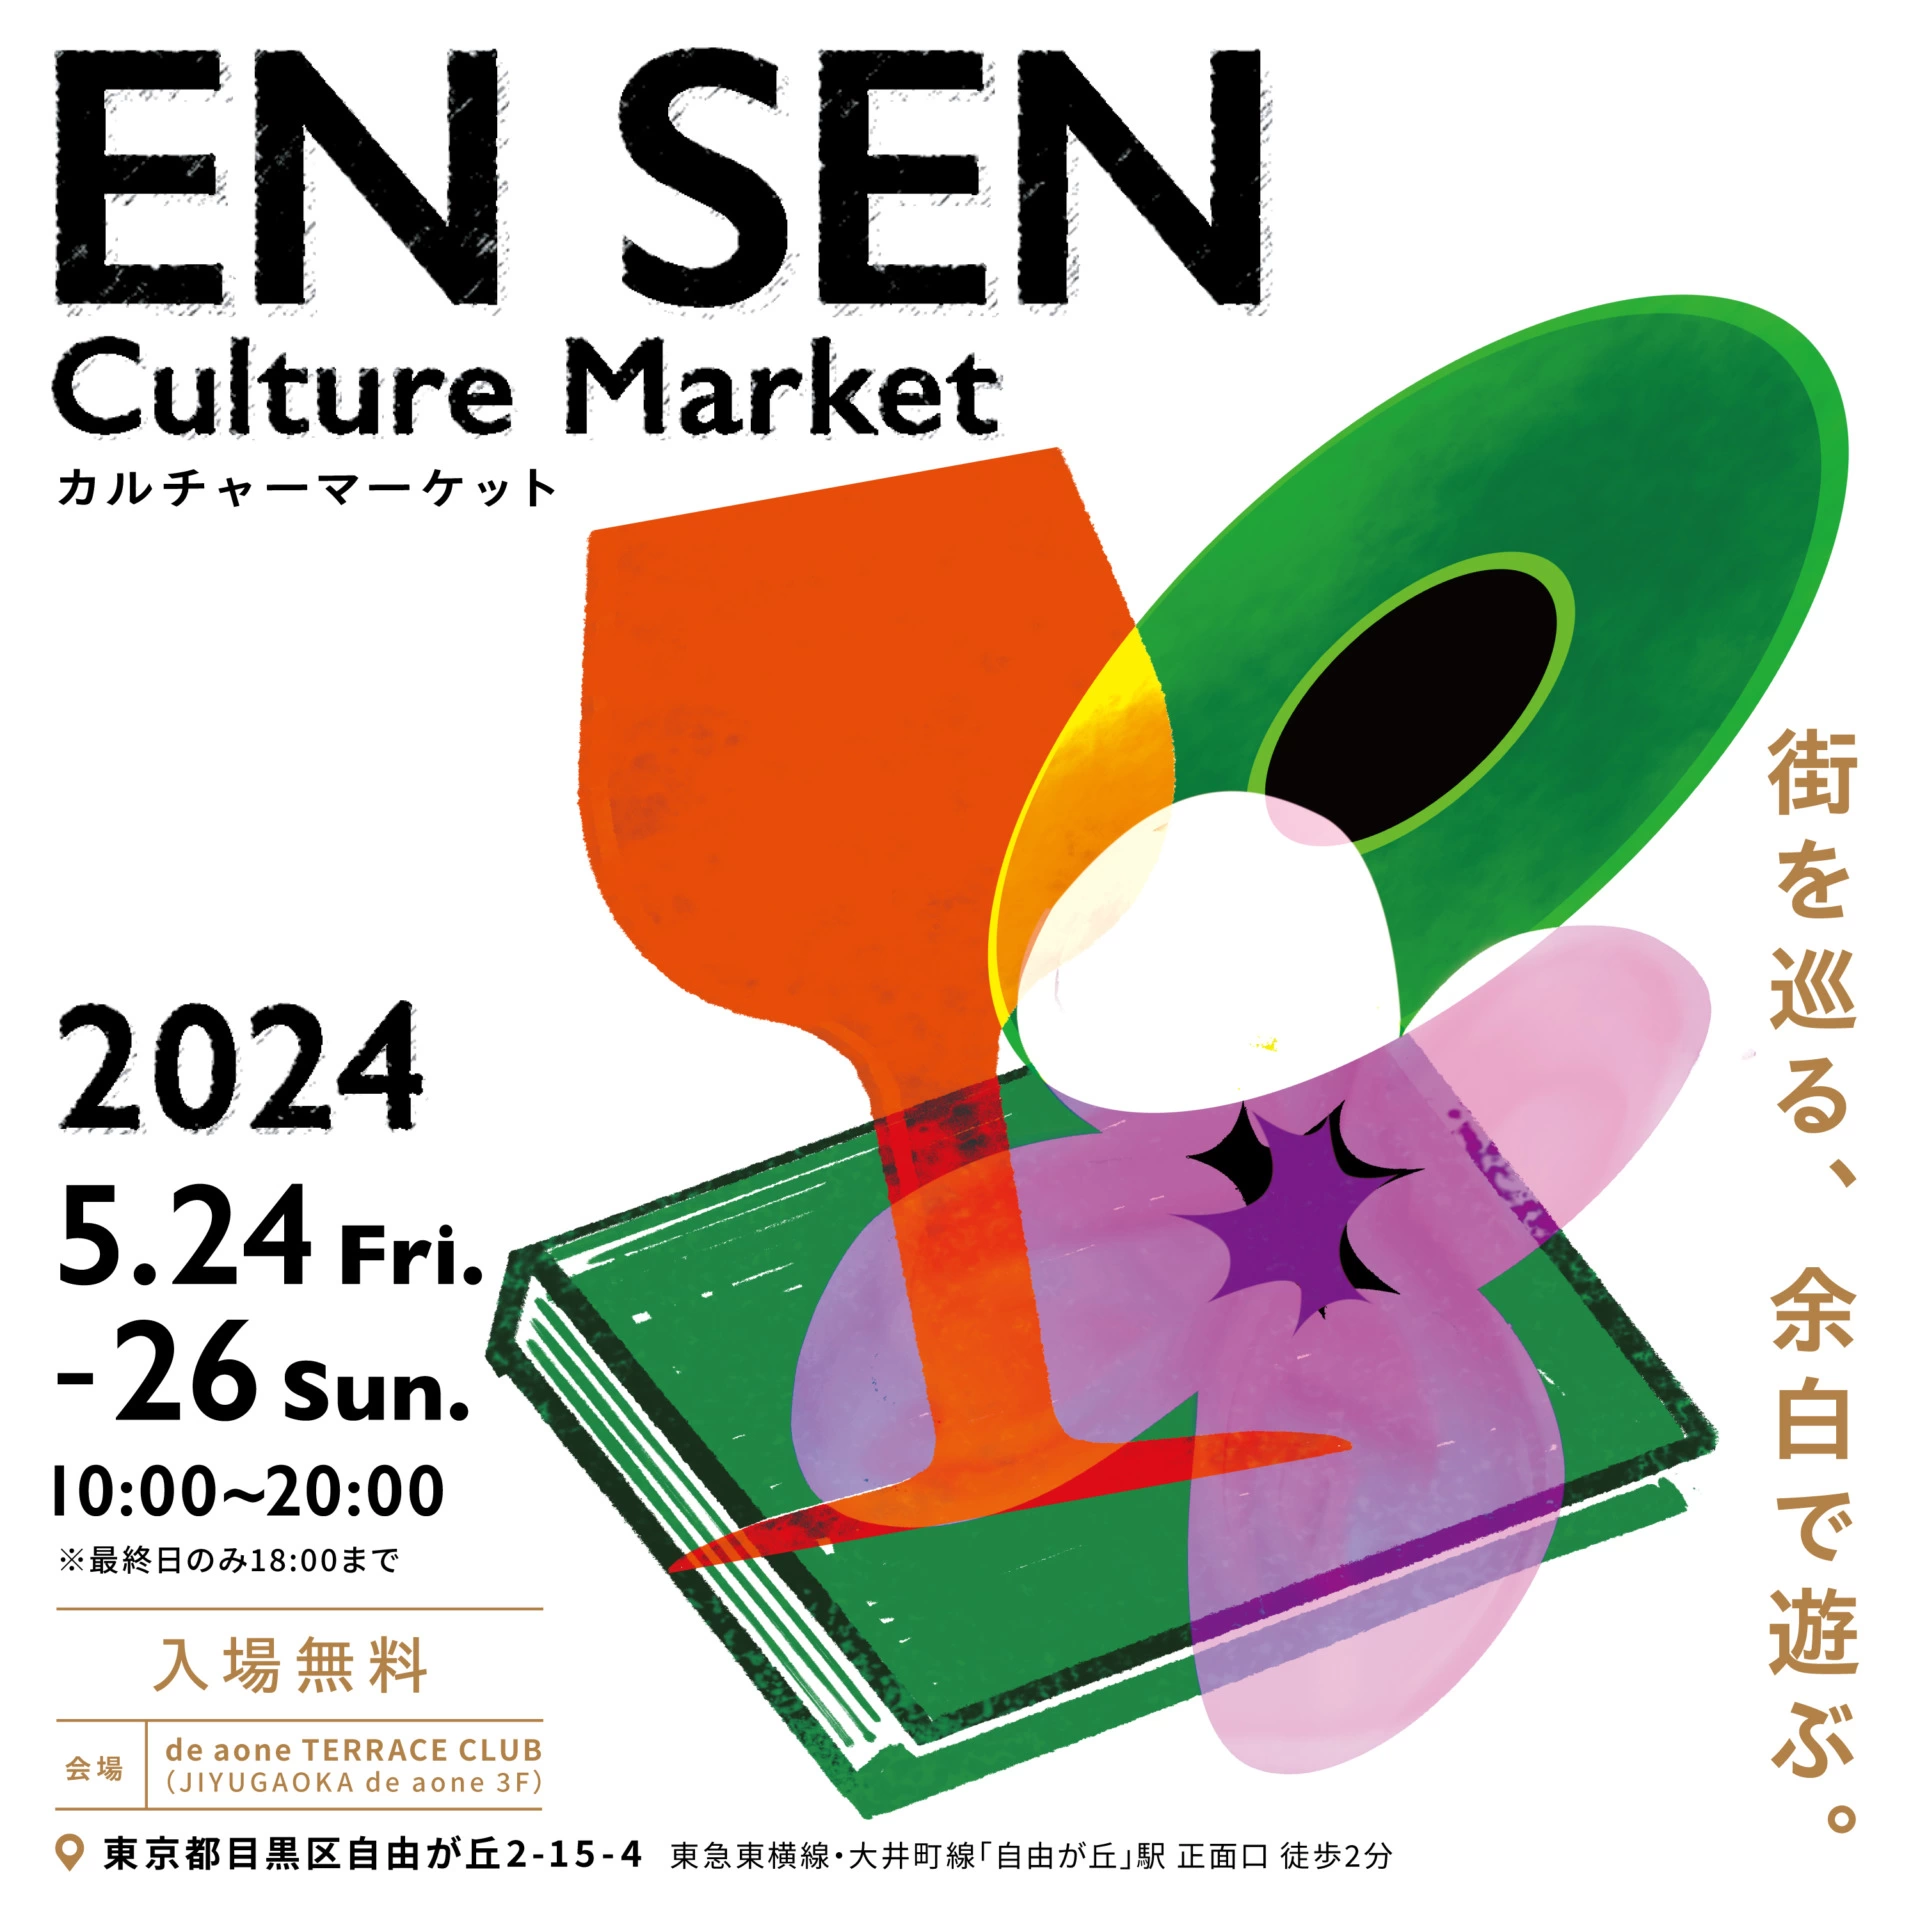 EN SEN Culture Market